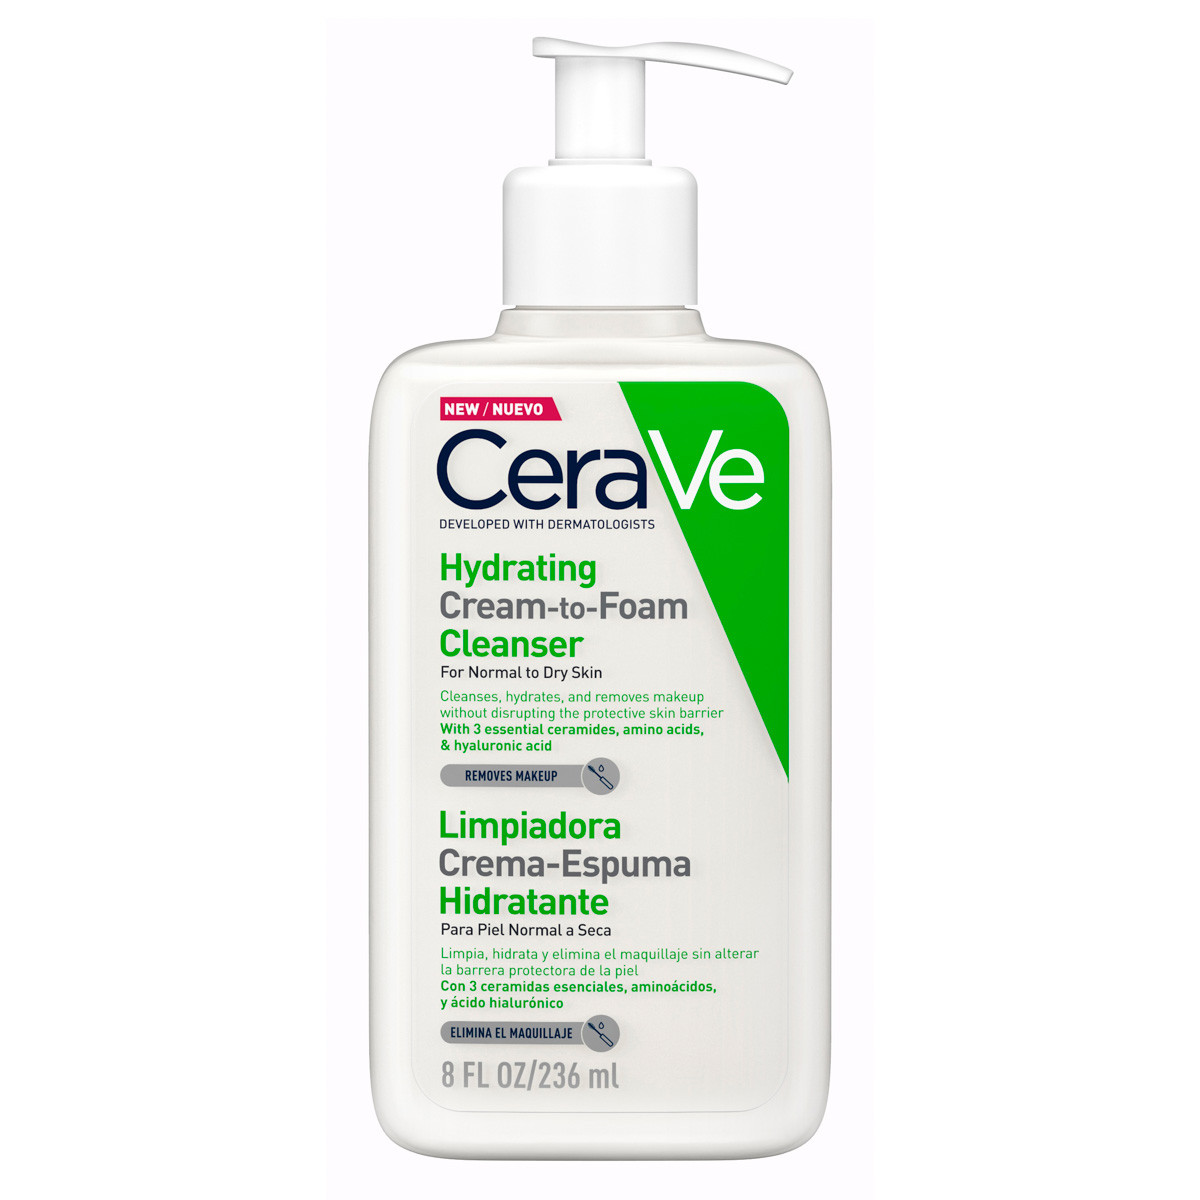 Imagen de Cerave limpiadora crema-espuma hidratante 236ml